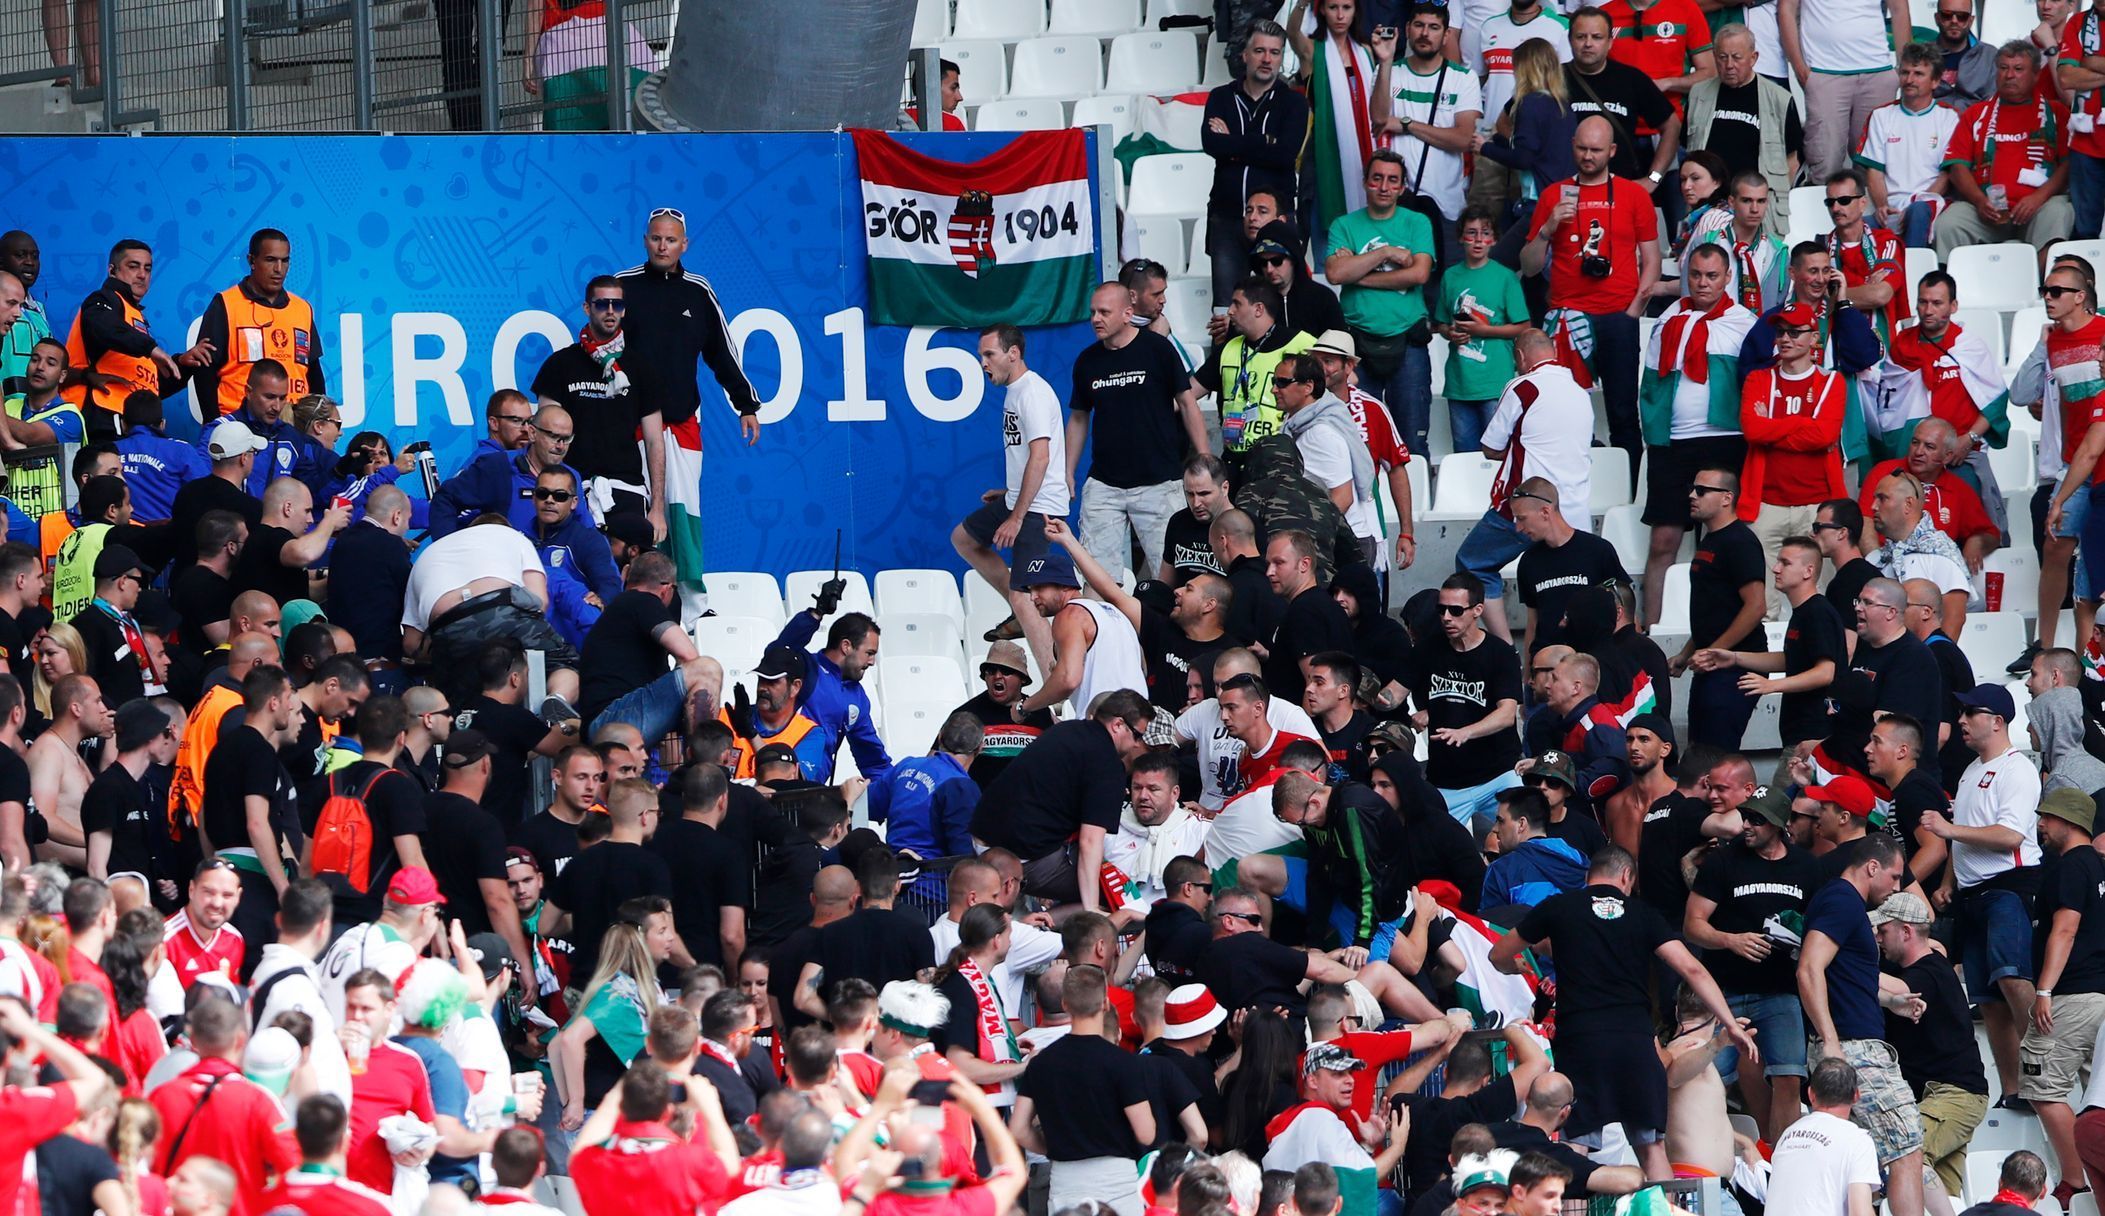 Euro 20161: výtržnosti maďarských fanoušků před zápasem s Islandem v Marseille